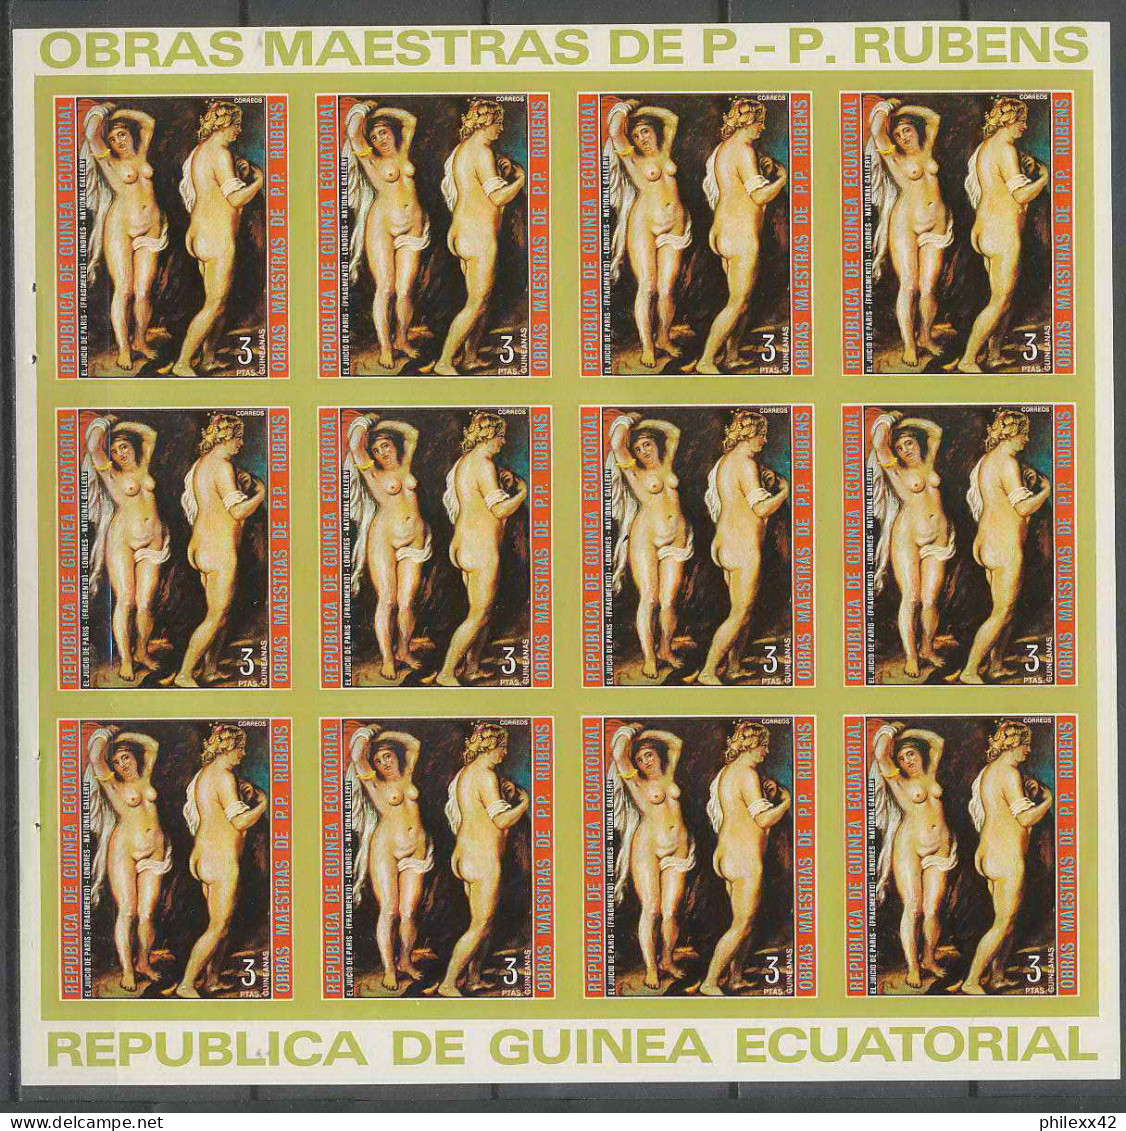 Guinée équatoriale Guinea 253a N°286 Rubens Essai Proof Non Dentelé Imperf Orate Tableau Painting Nus Nudes - Desnudos